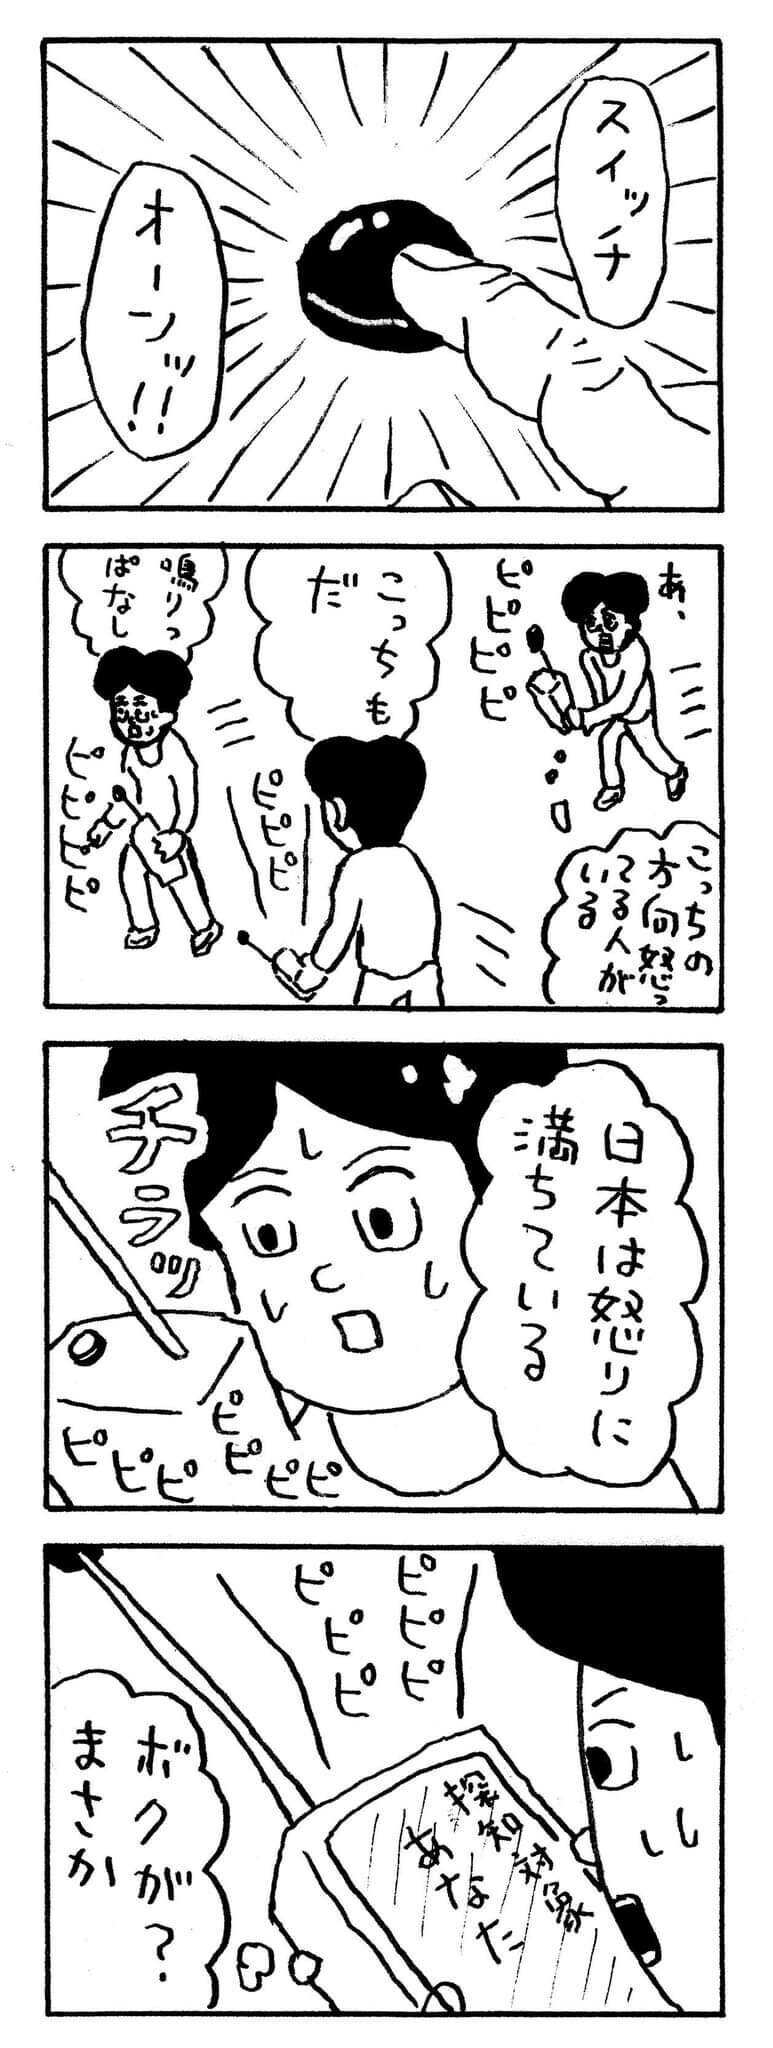 ８コマ漫画 怒り 中川学 漫画家 Note